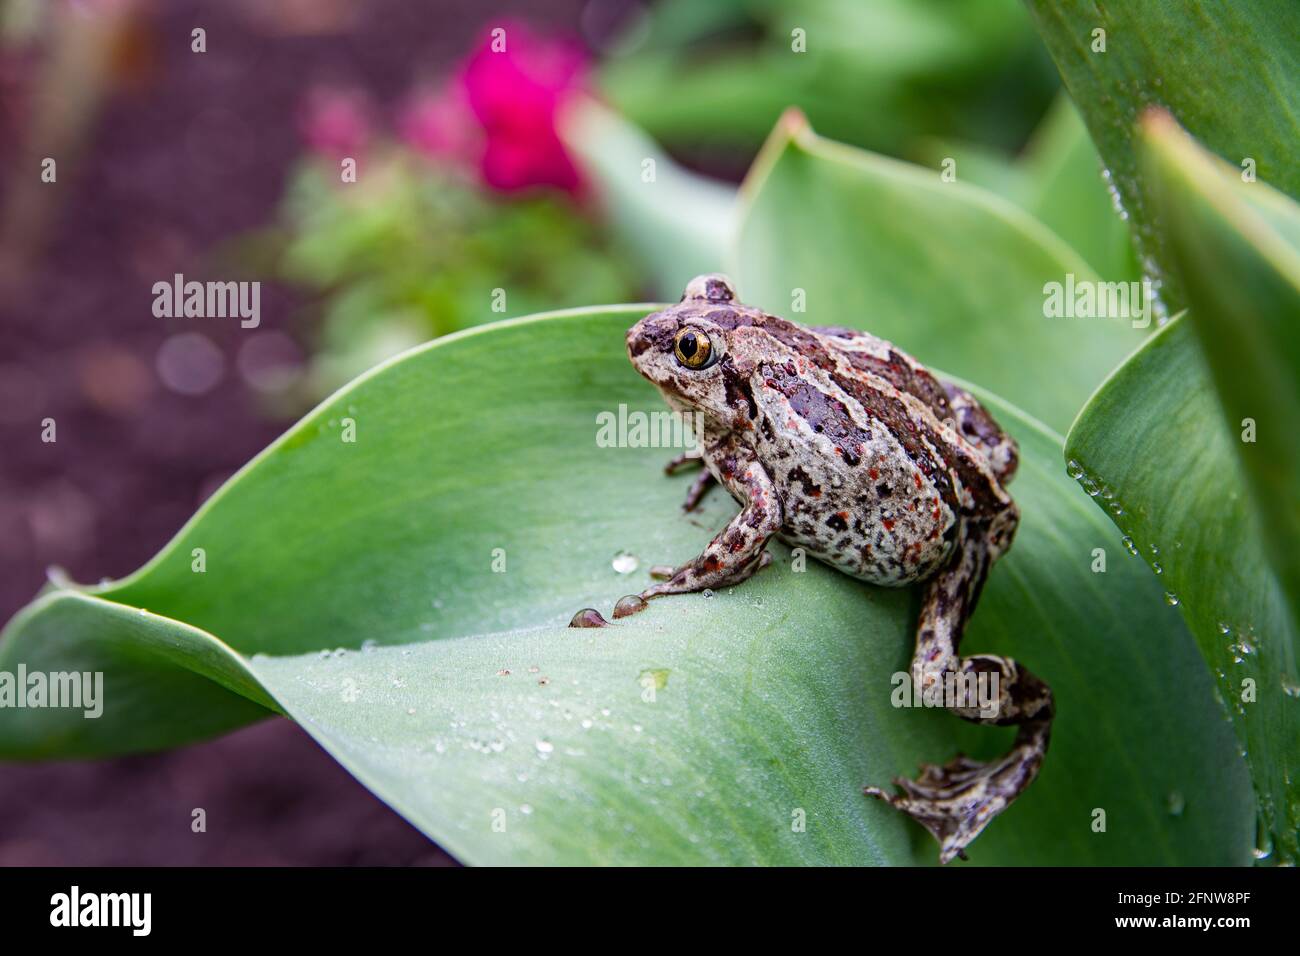 La grenouille brune commune européenne repose sur la feuille verte après la pluie. Rana temporaria gros plan. Banque D'Images